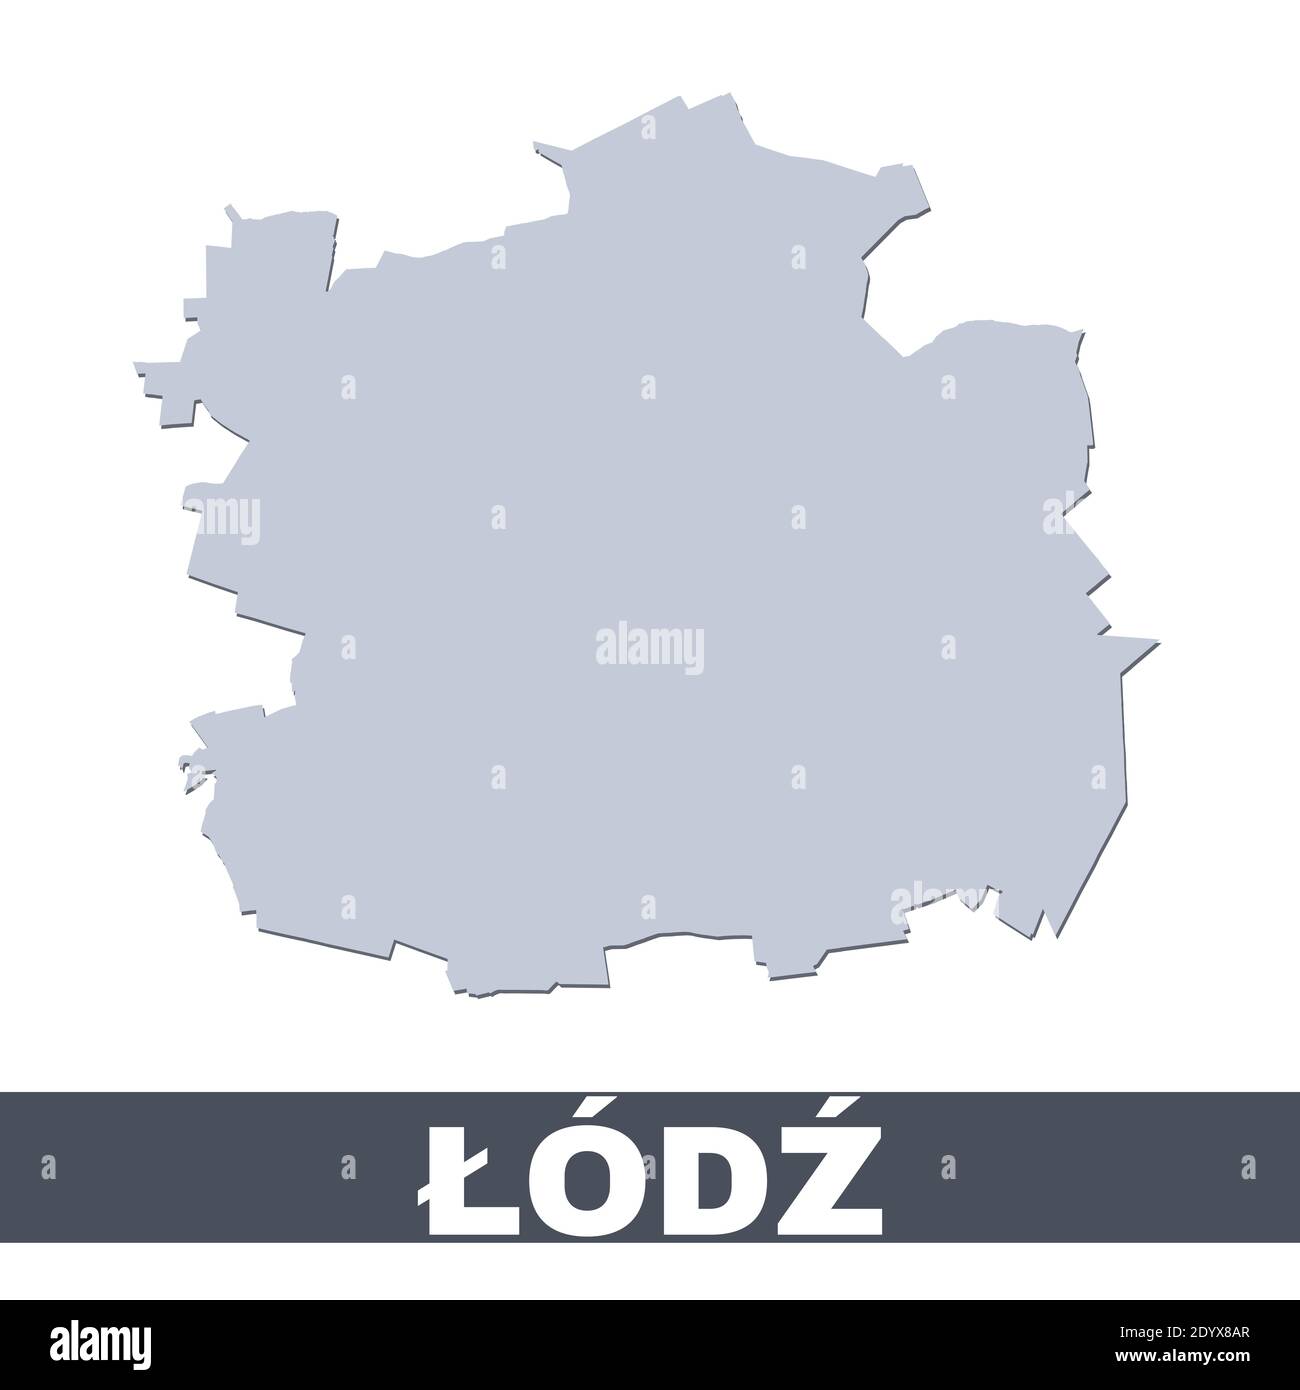 Mappa di Lodz. Mappa vettoriale dell'area della città di Lodz all'interno dei suoi confini. Grigio con ombra su sfondo bianco. Illustrazione isolata. Illustrazione Vettoriale